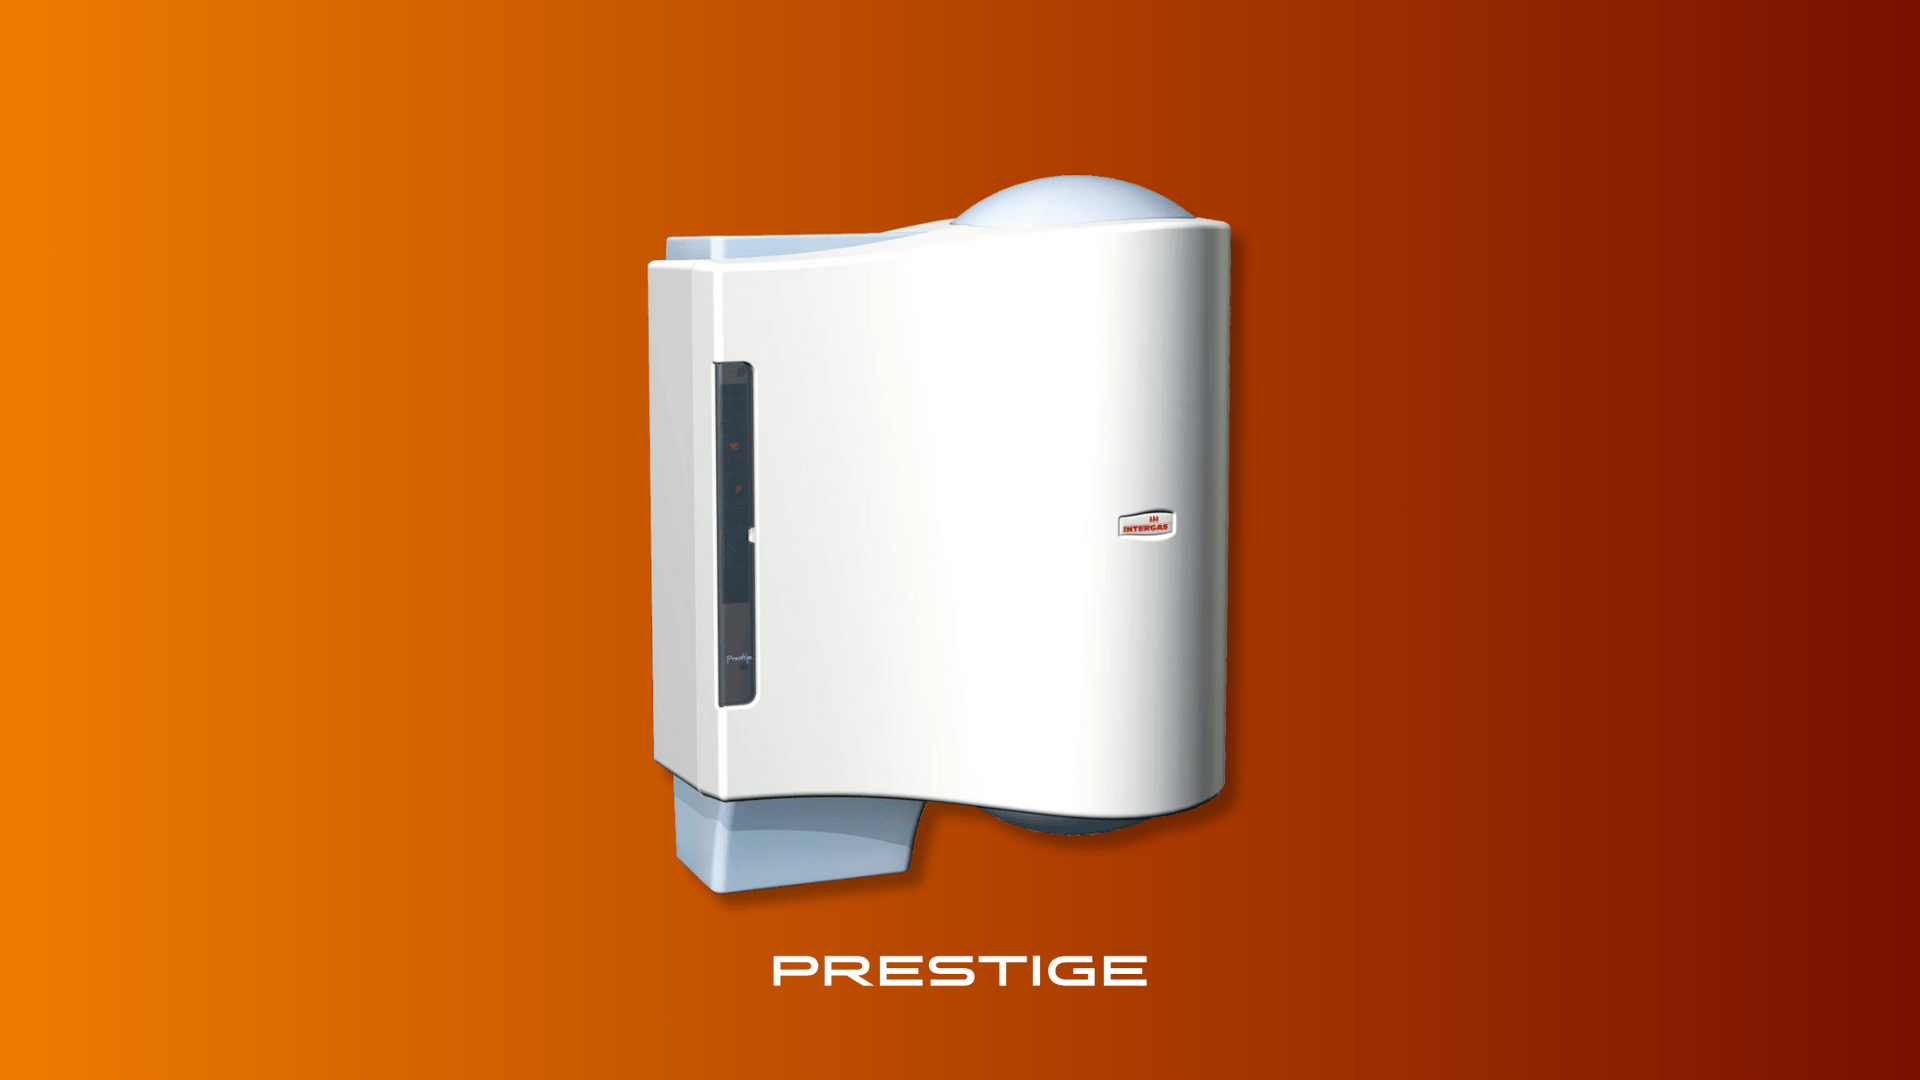 Intergas Prestige